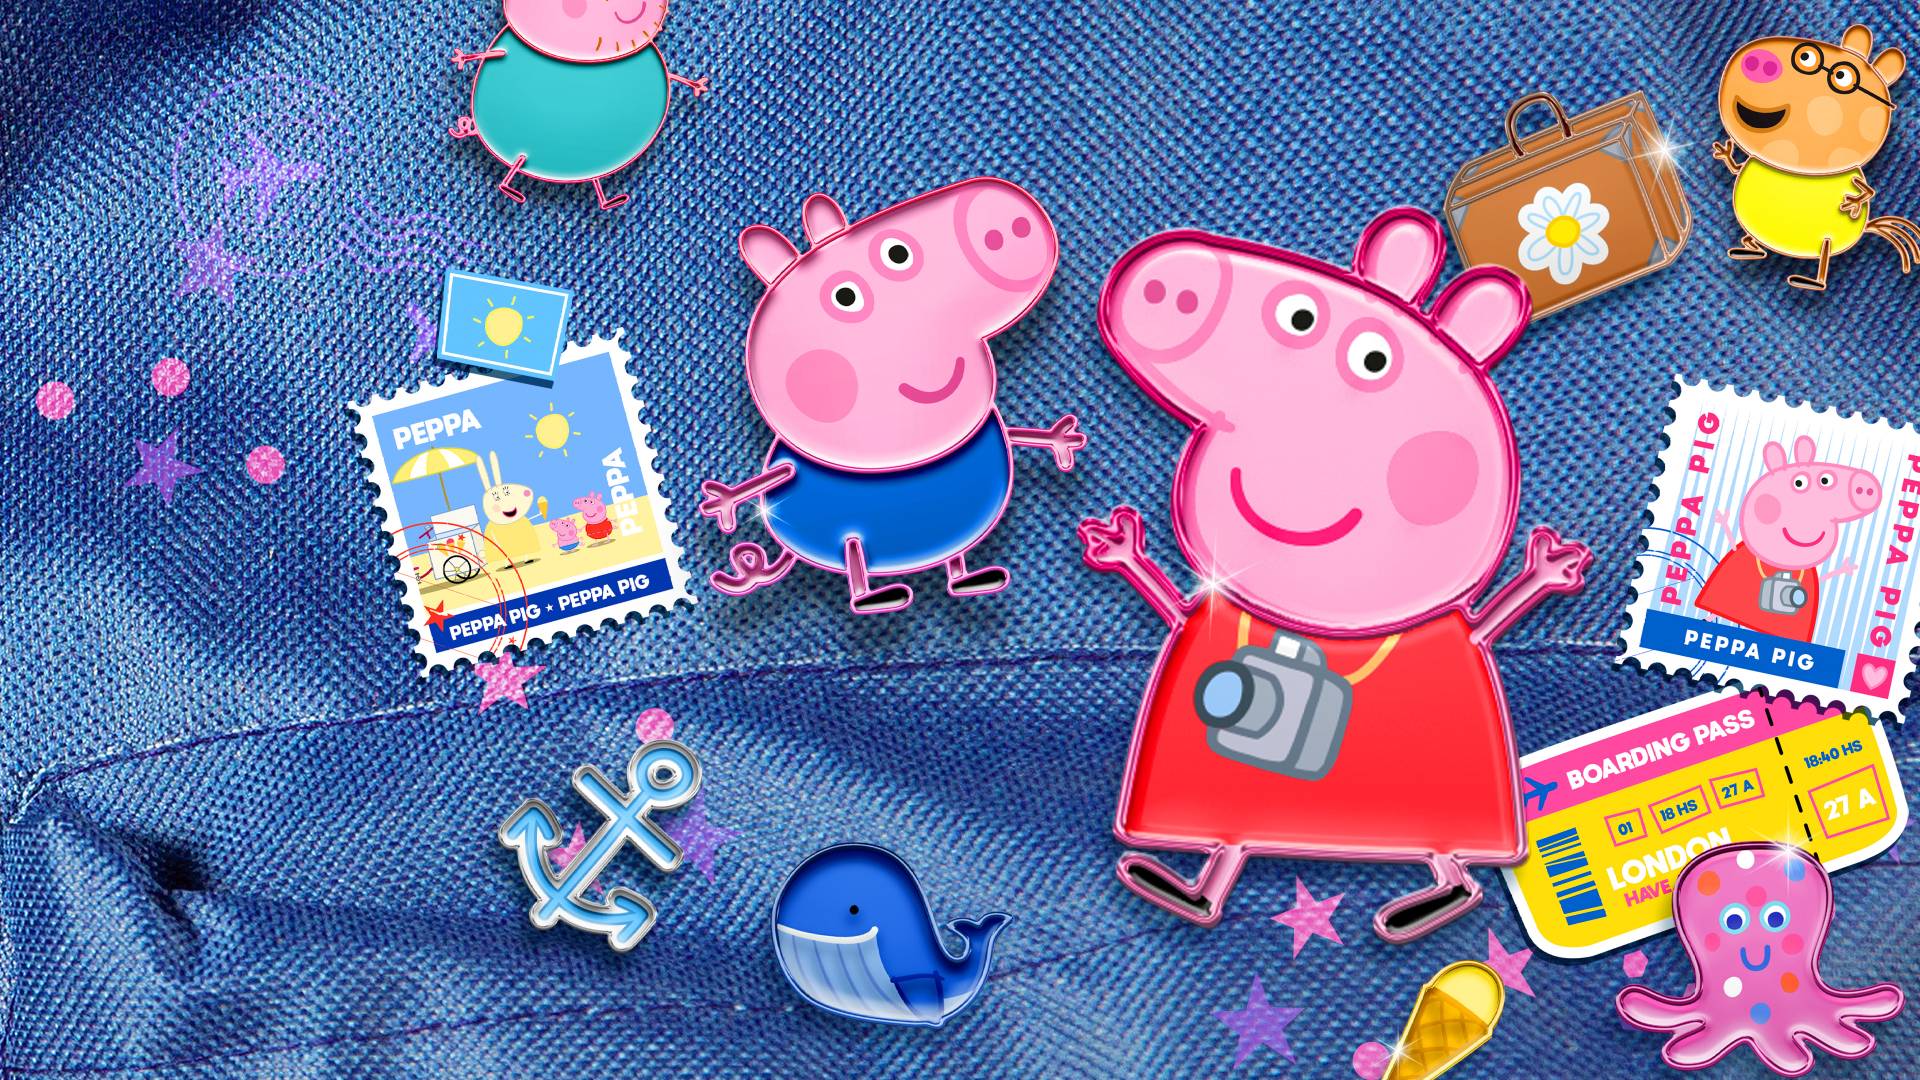 Discovery Kids Brasil - É amanhe! Venha curtir uma mega maratona da Peppa  Pig no Discovery Kids! Peppa em casa, nesse domingo a partir das 8h!  @discoverykidsbr apoia #euficoemcasa